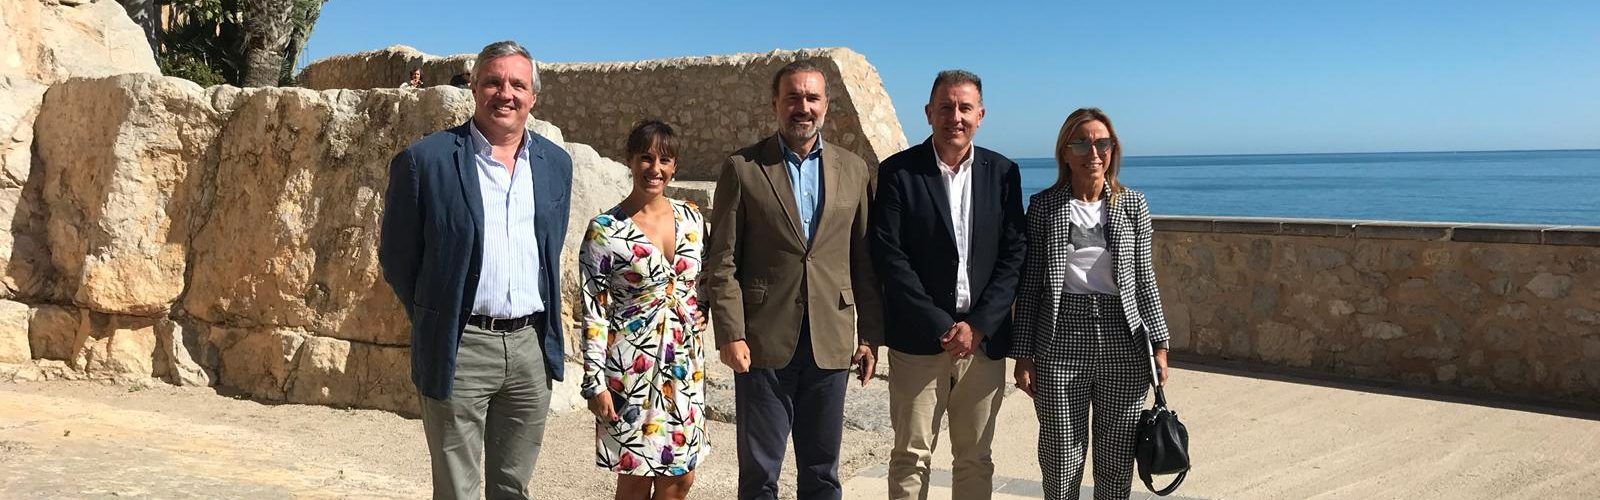 La Diputación impulsará la internacionalización del Castillo de Peñíscola con la Asociación de Grandes Castillos de España